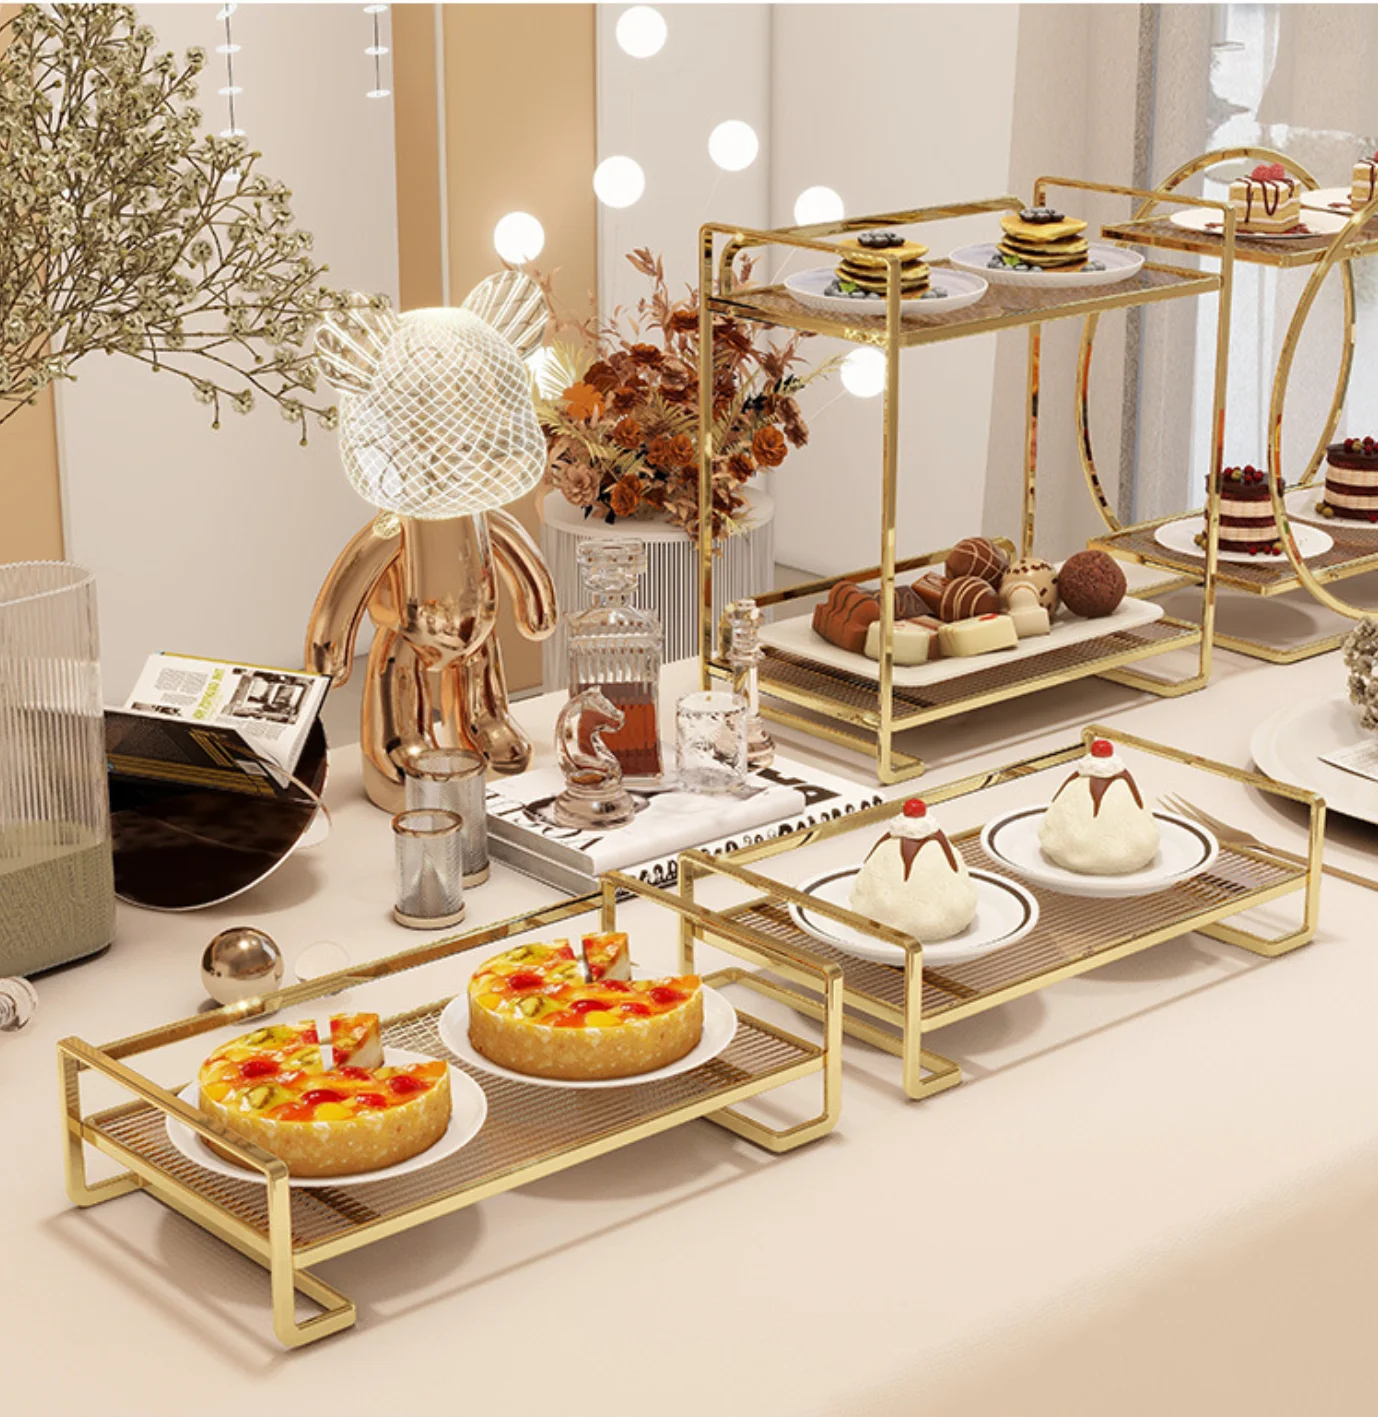 Свадебный десертный стол, подставка для торта, тарелки для конфет, полка для фуршета, вечеринка в отеле, Многослойное печенье, Фрукты, хлеб, Продукты, подарки, лотки для показа